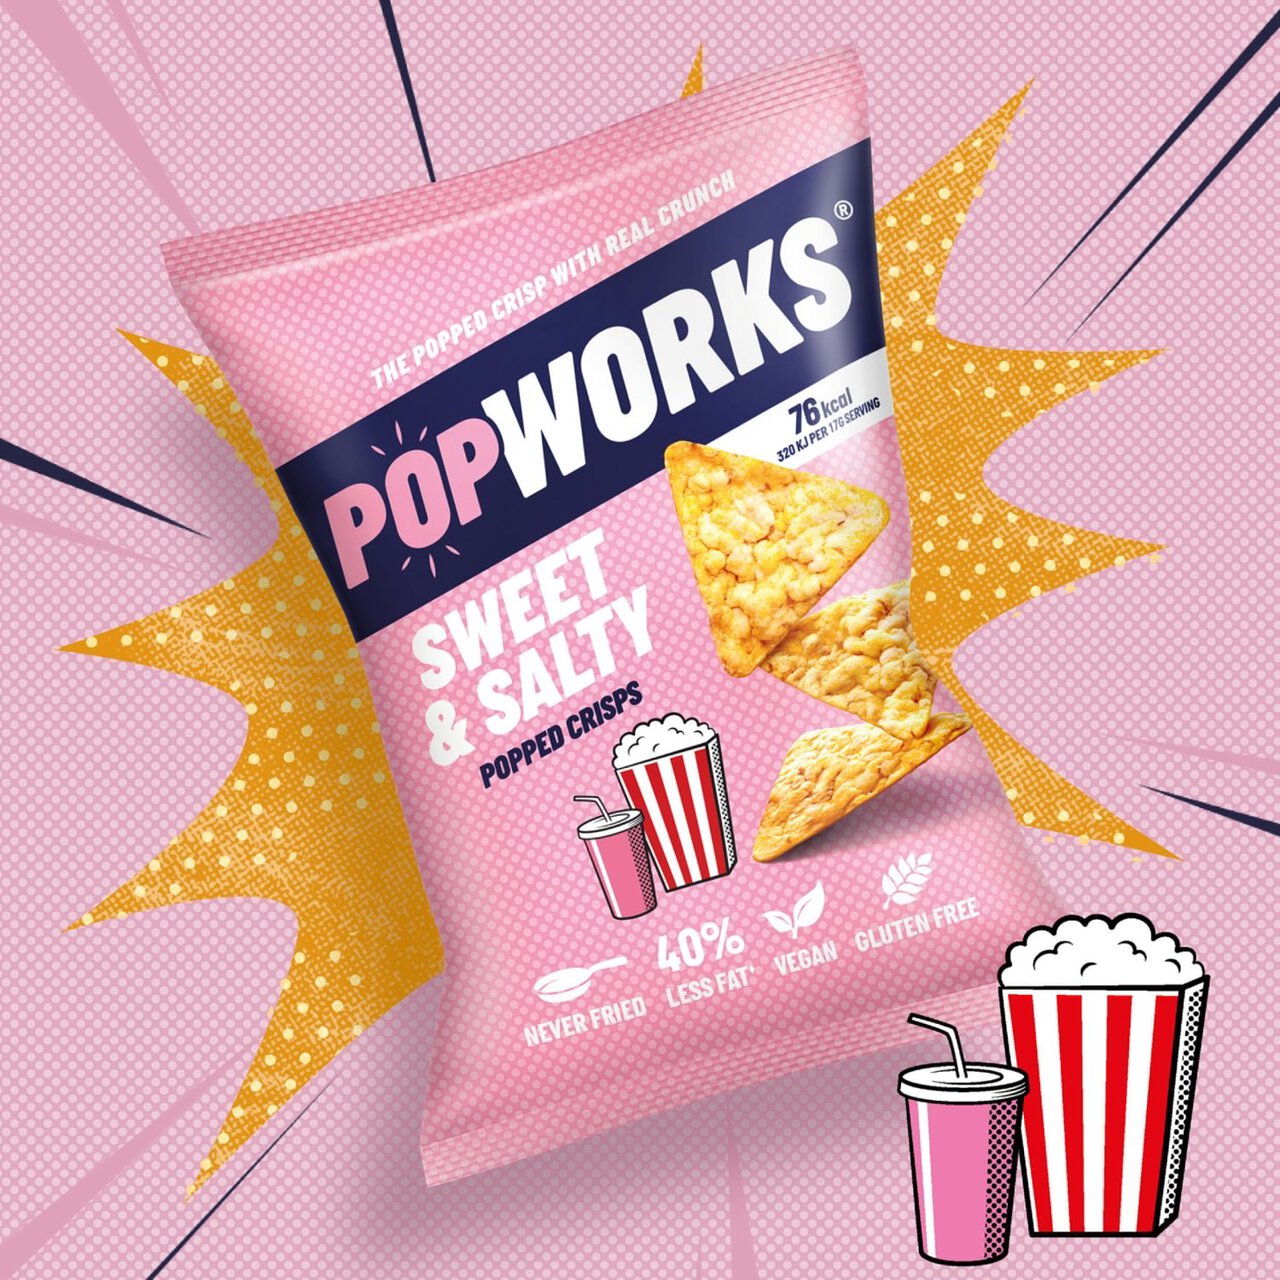 PopWorks Sweet & Salty Popped Crisps Sharing Bag 85g